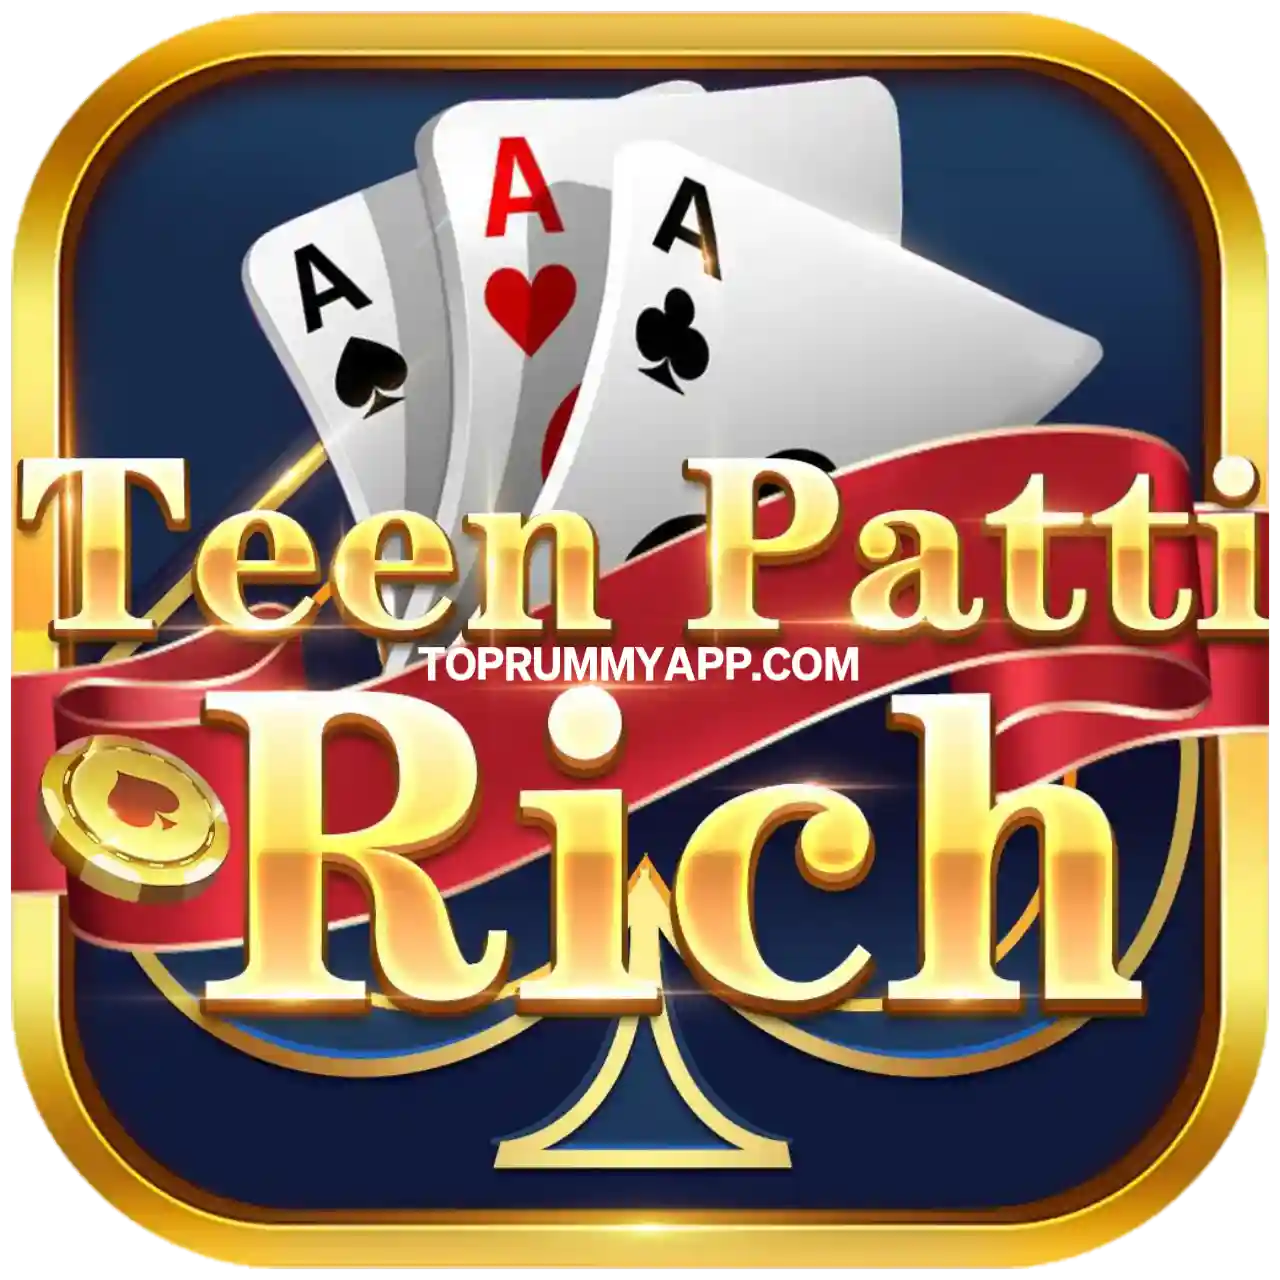 Teen Patti Rich App Download - Top 10 Teen Patti App List